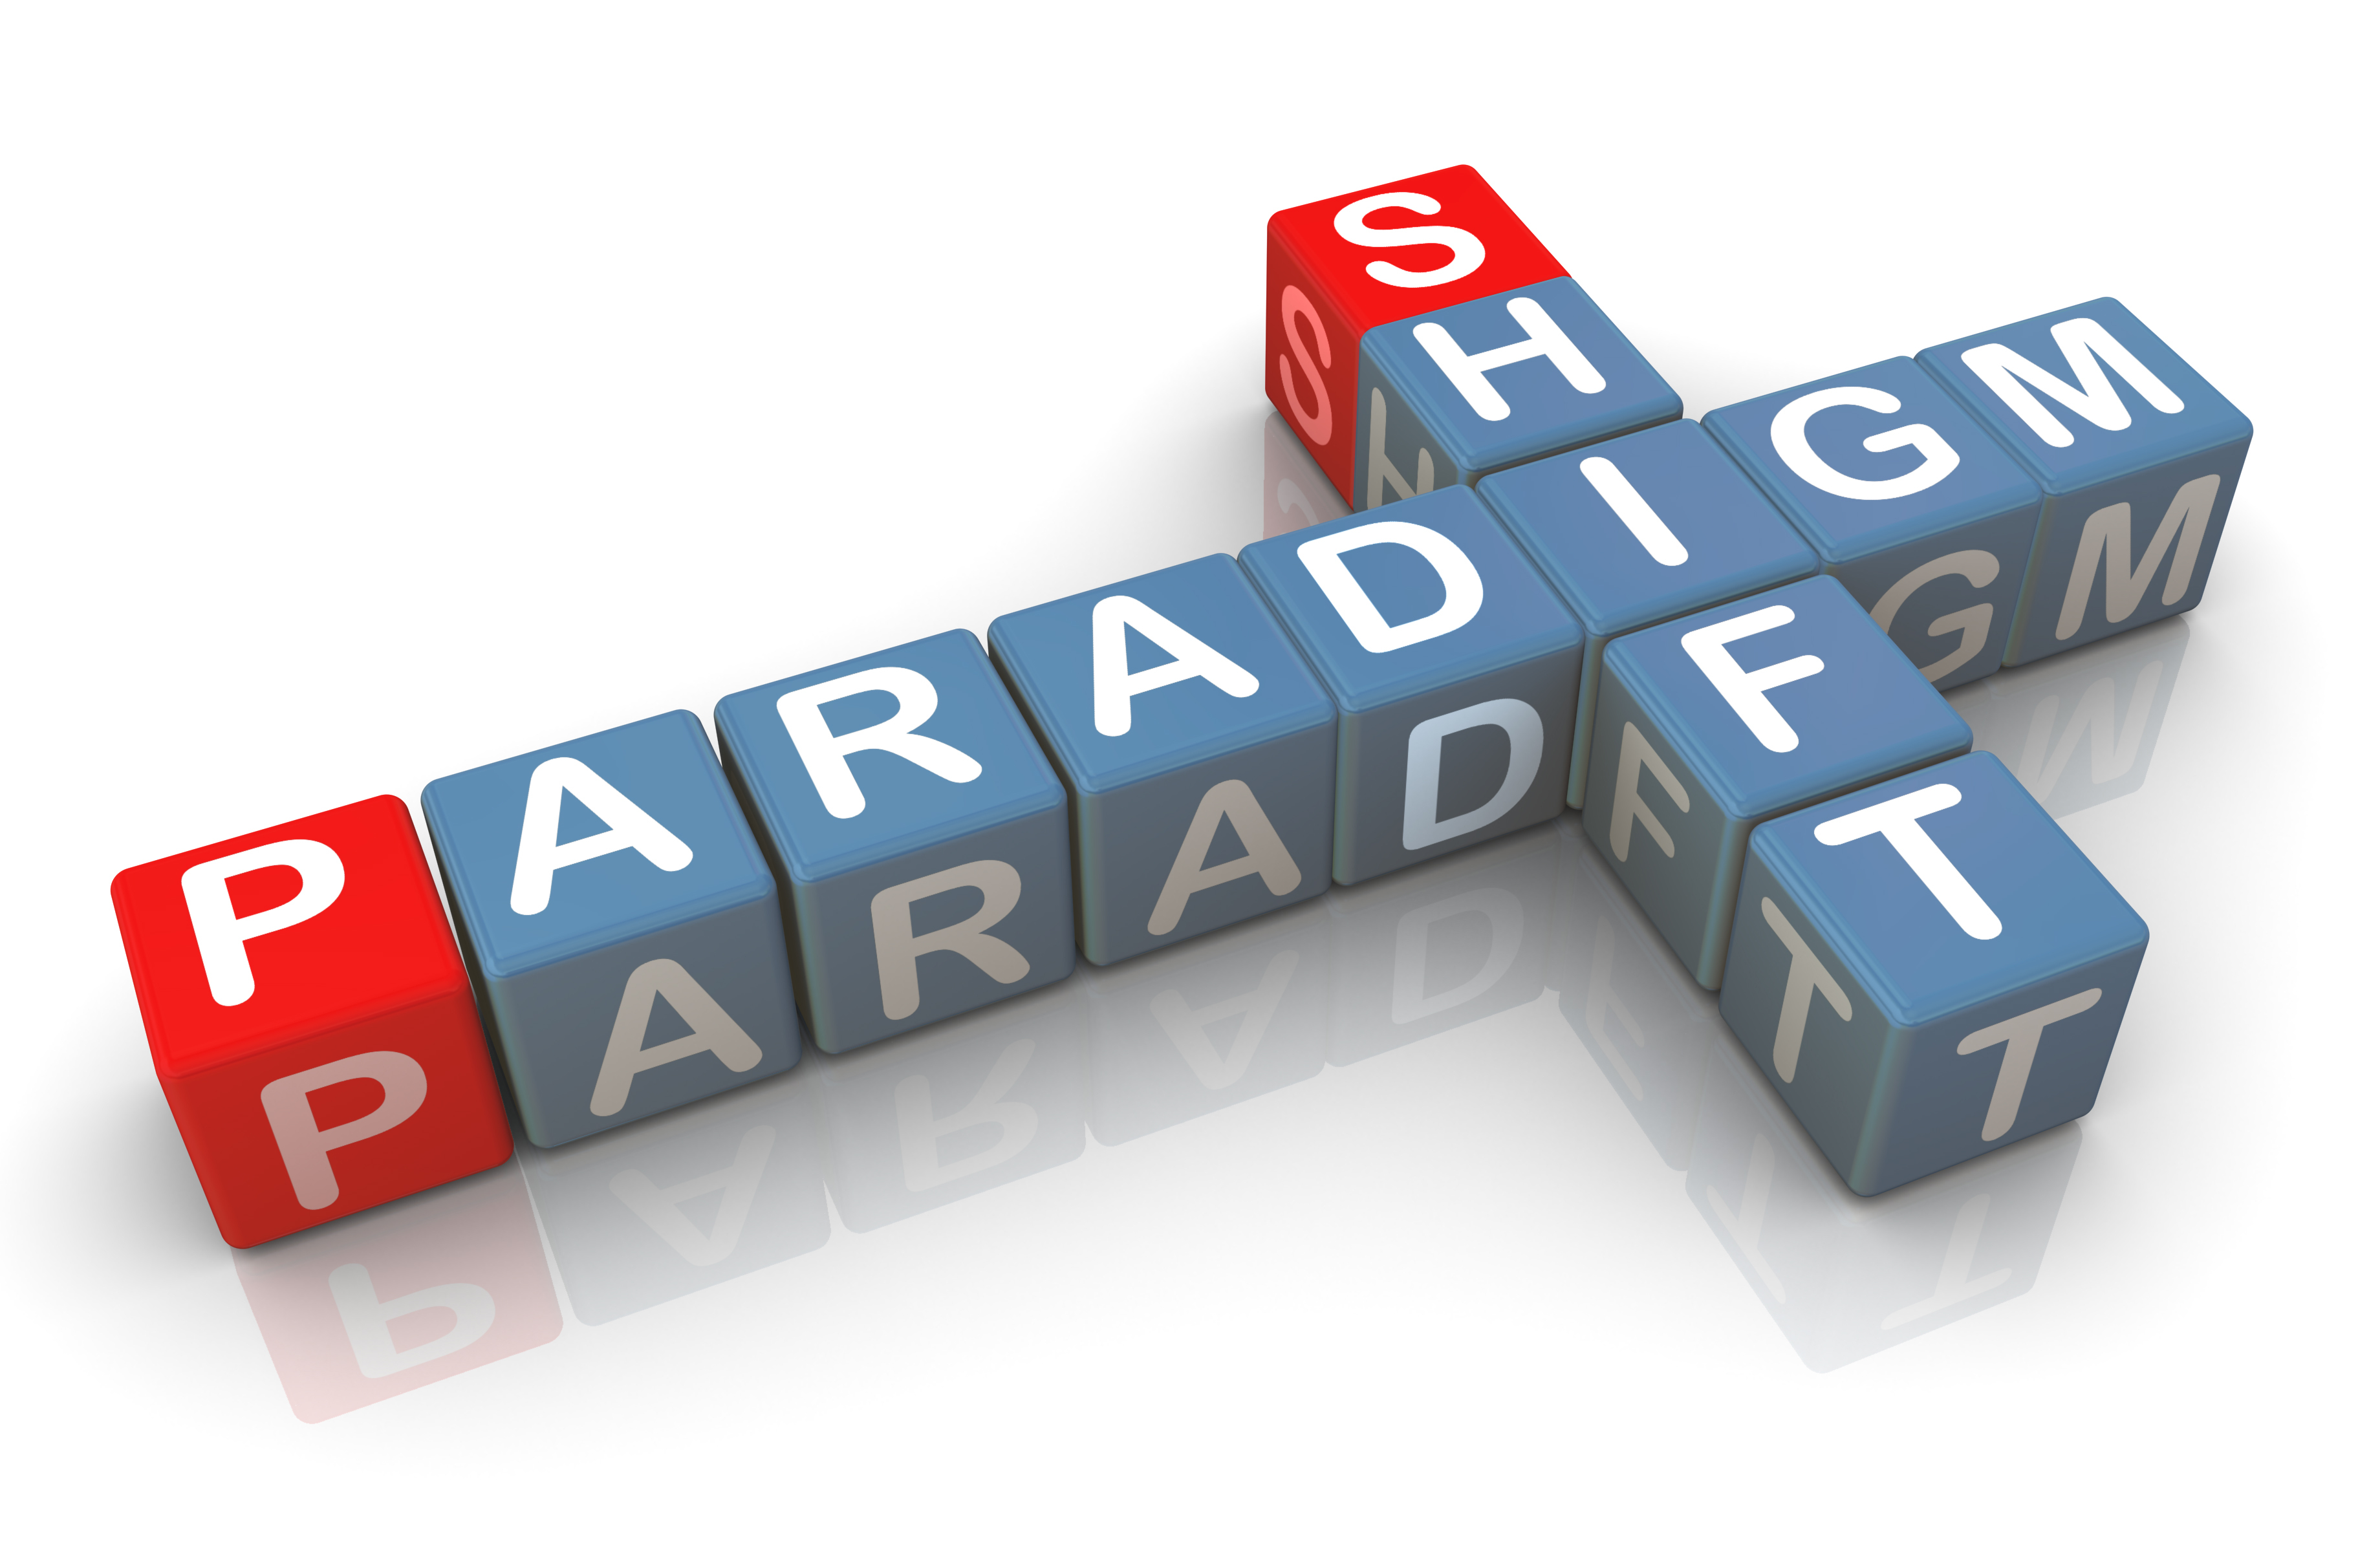 Paradigm And Paradigm Shift   Capri3